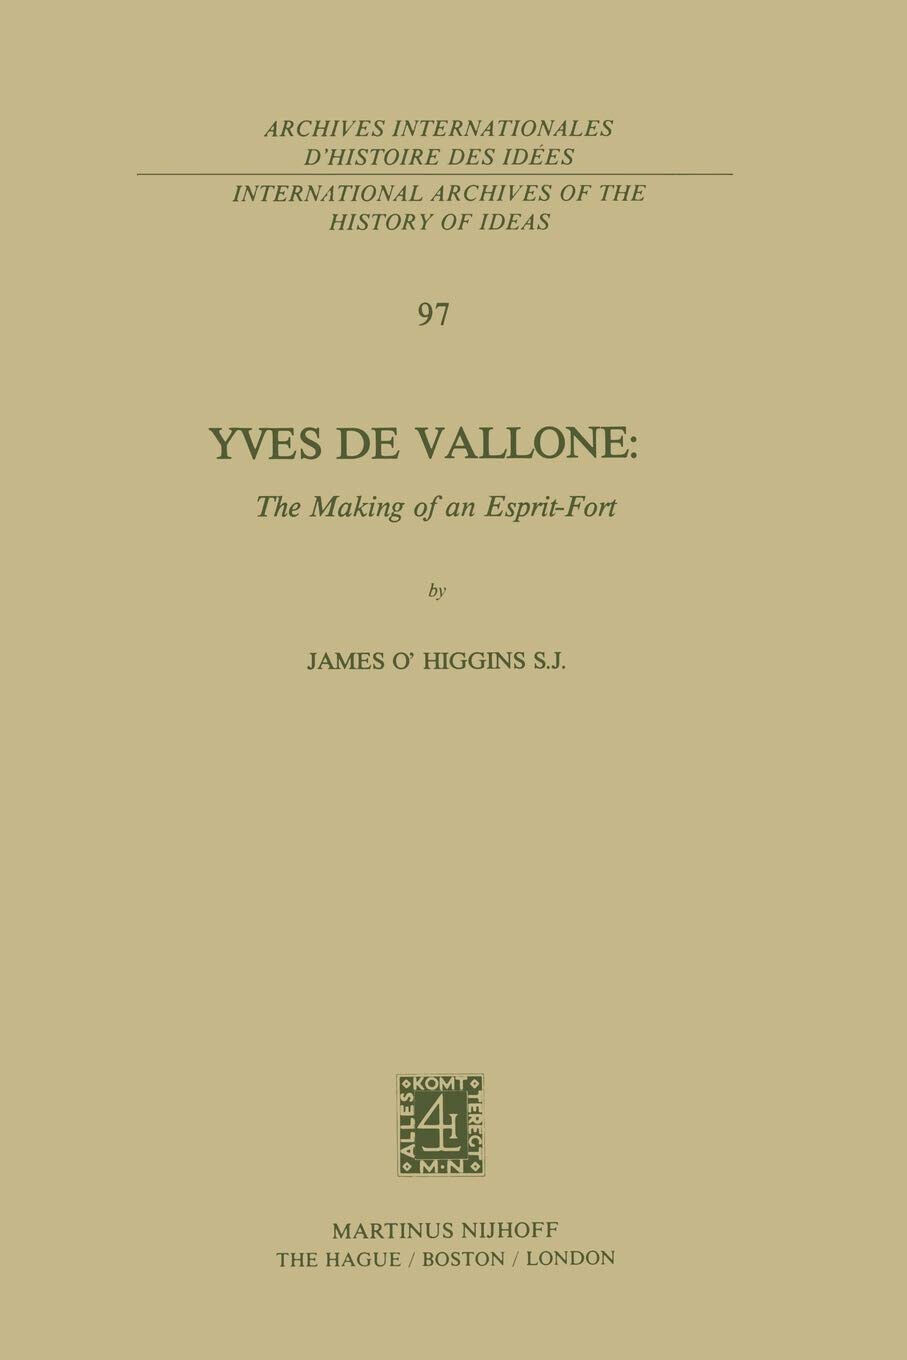 Yves de Vallone: The Making of an Esprit-Fort - James O'Higgins - Springer, 2013